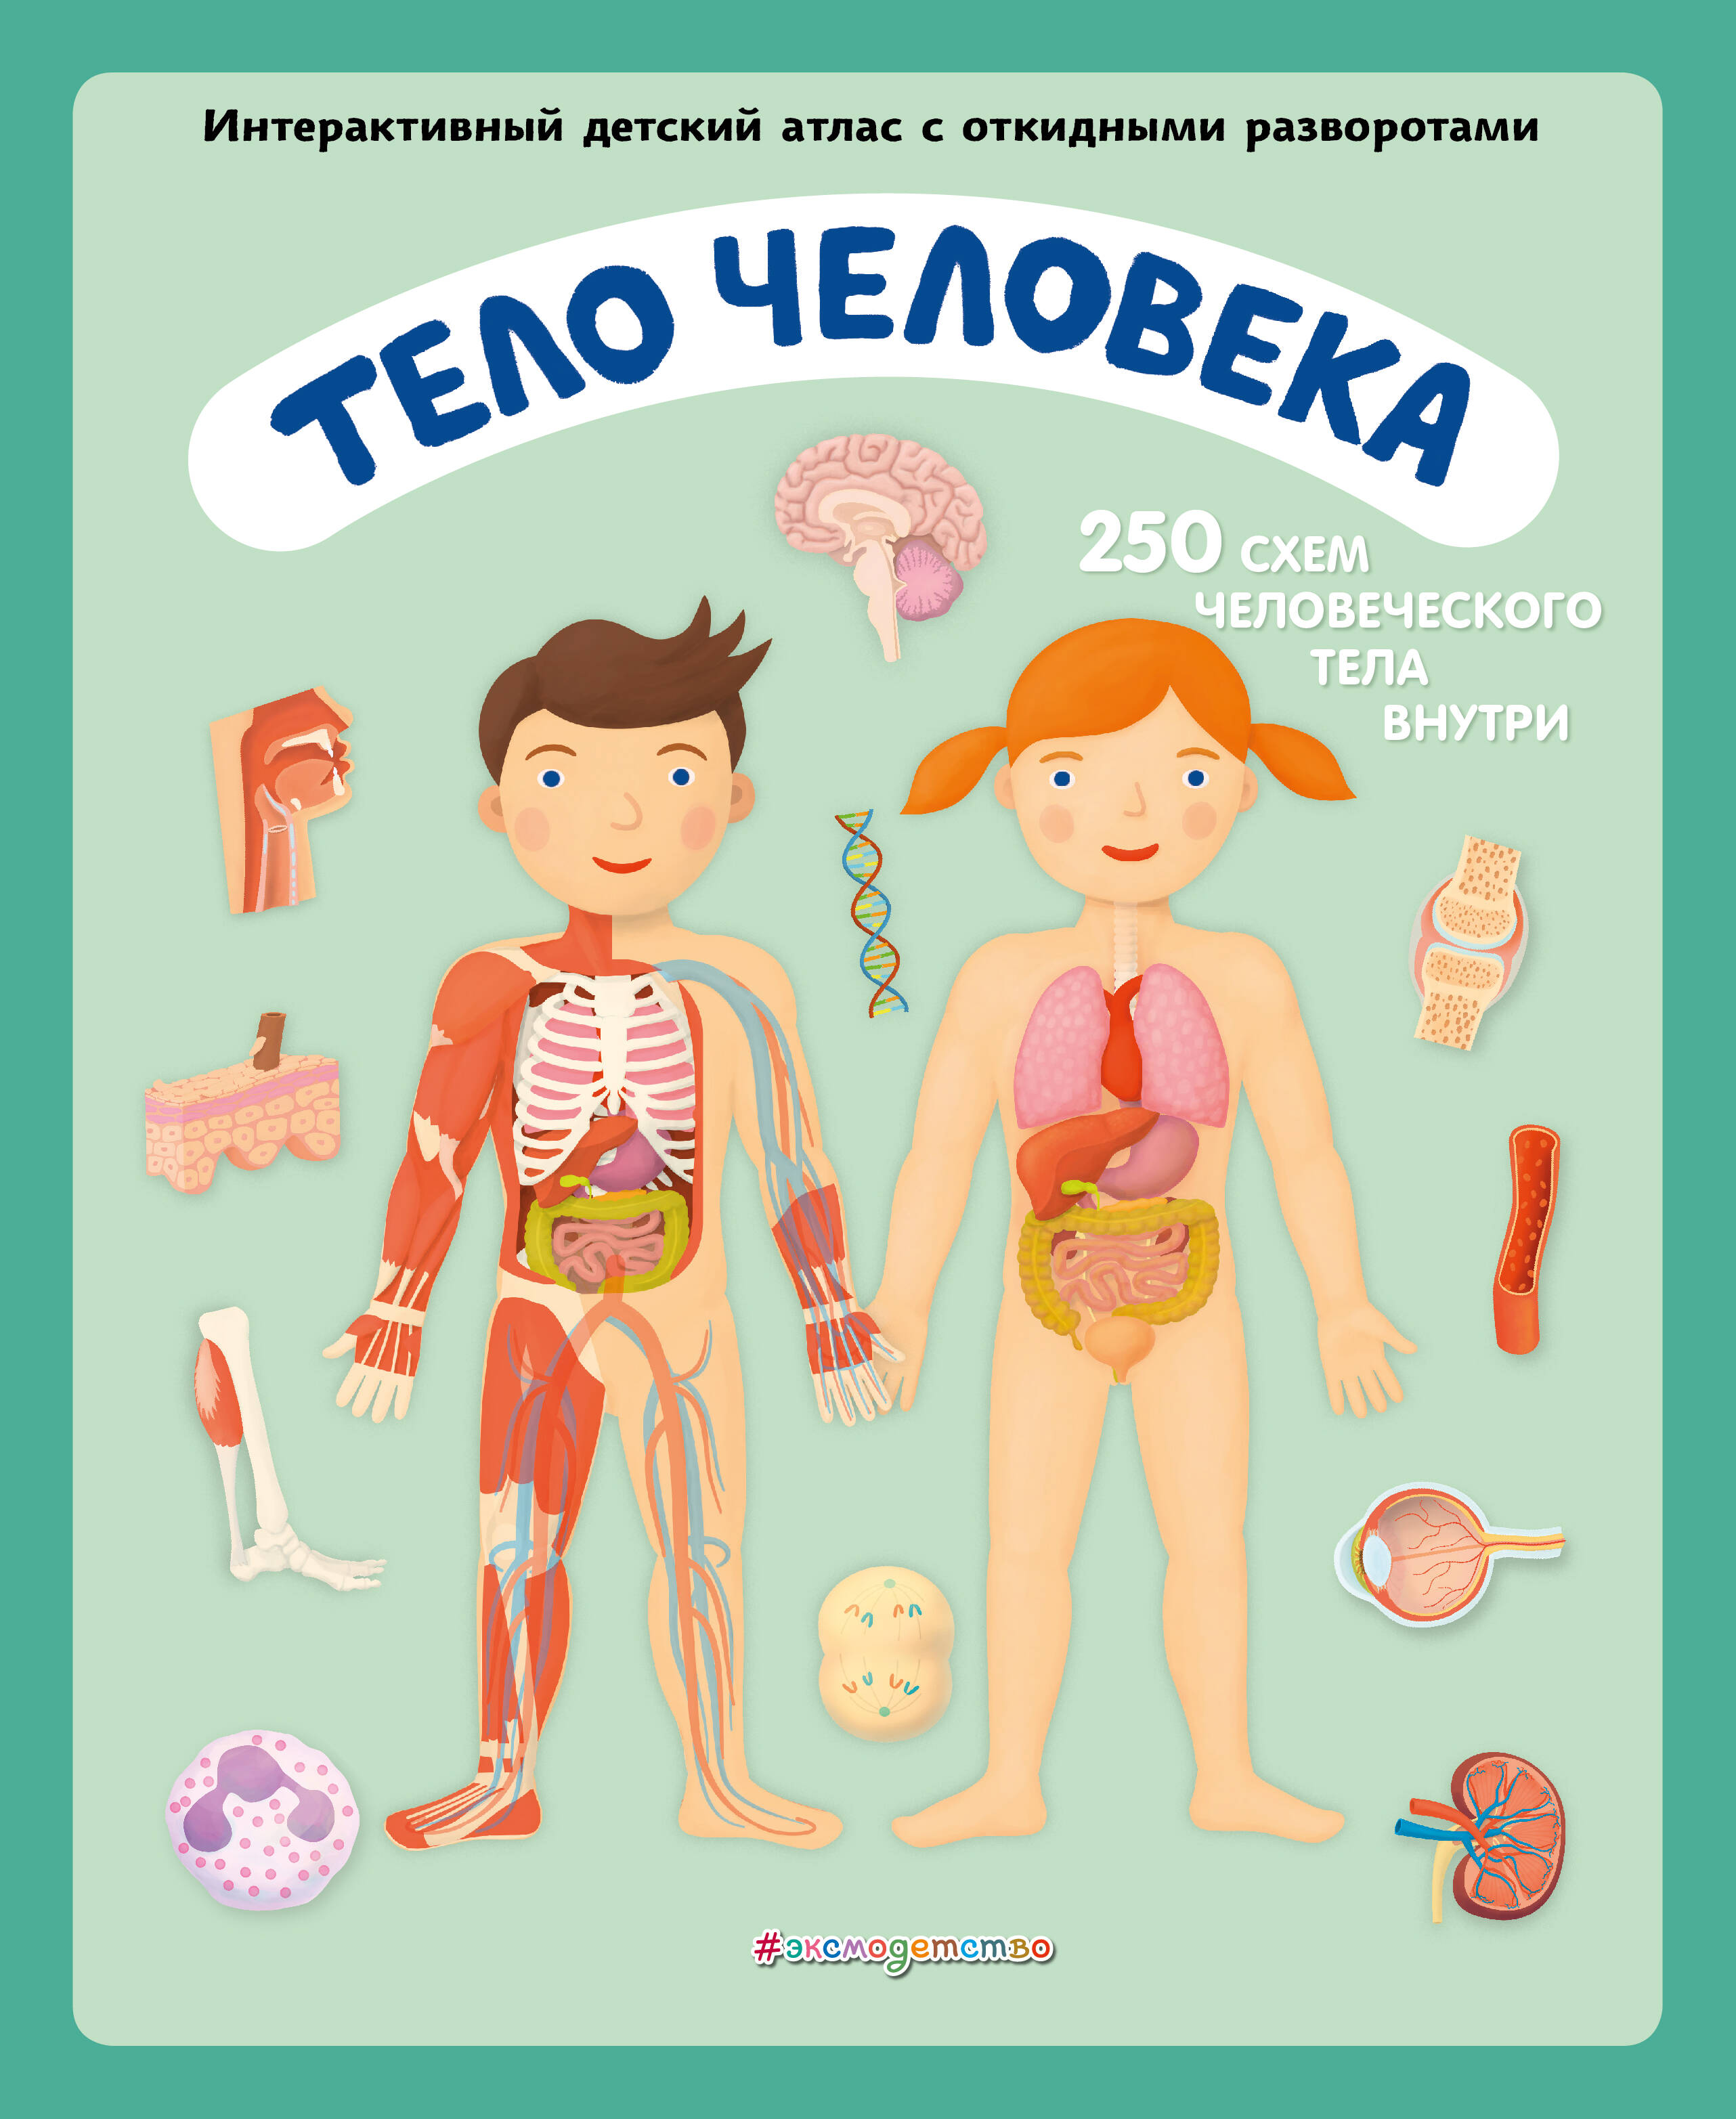 Ружичка Олдрих - Тело человека. Интерактивный детский атлас с откидными разворотами